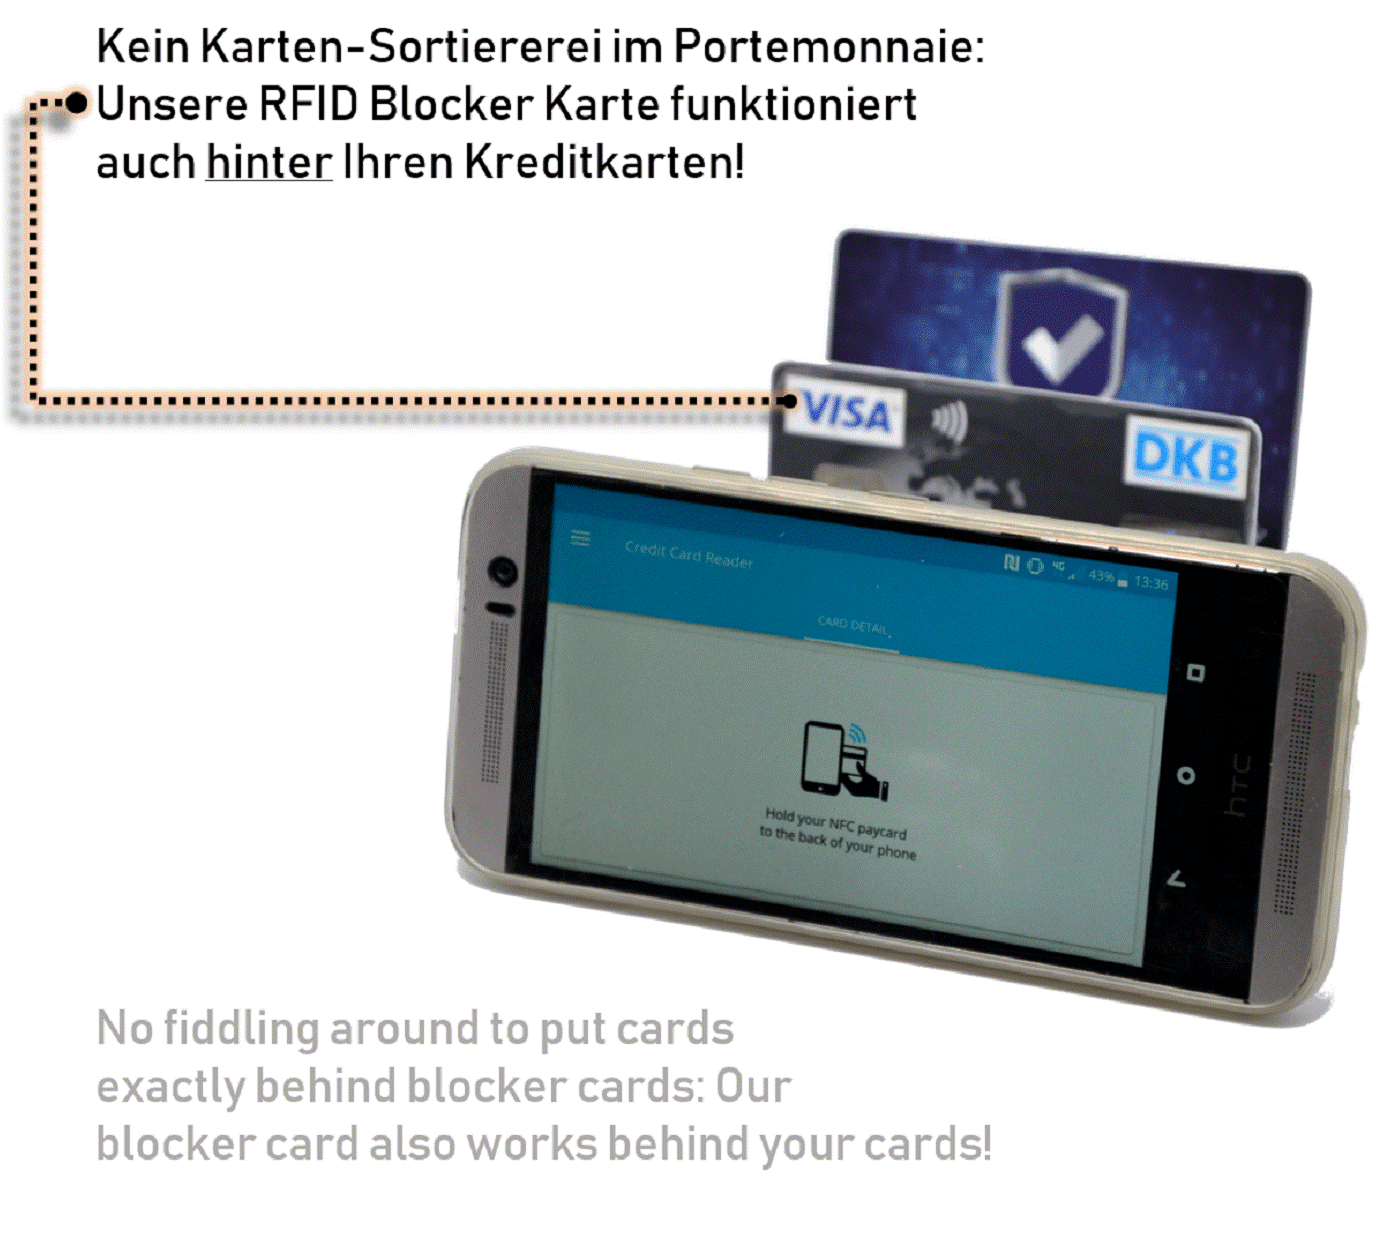 Was ist der Unterschied zwischen einer RFID Blocker Karte & Kartenhüllen / Kartenhaltern?